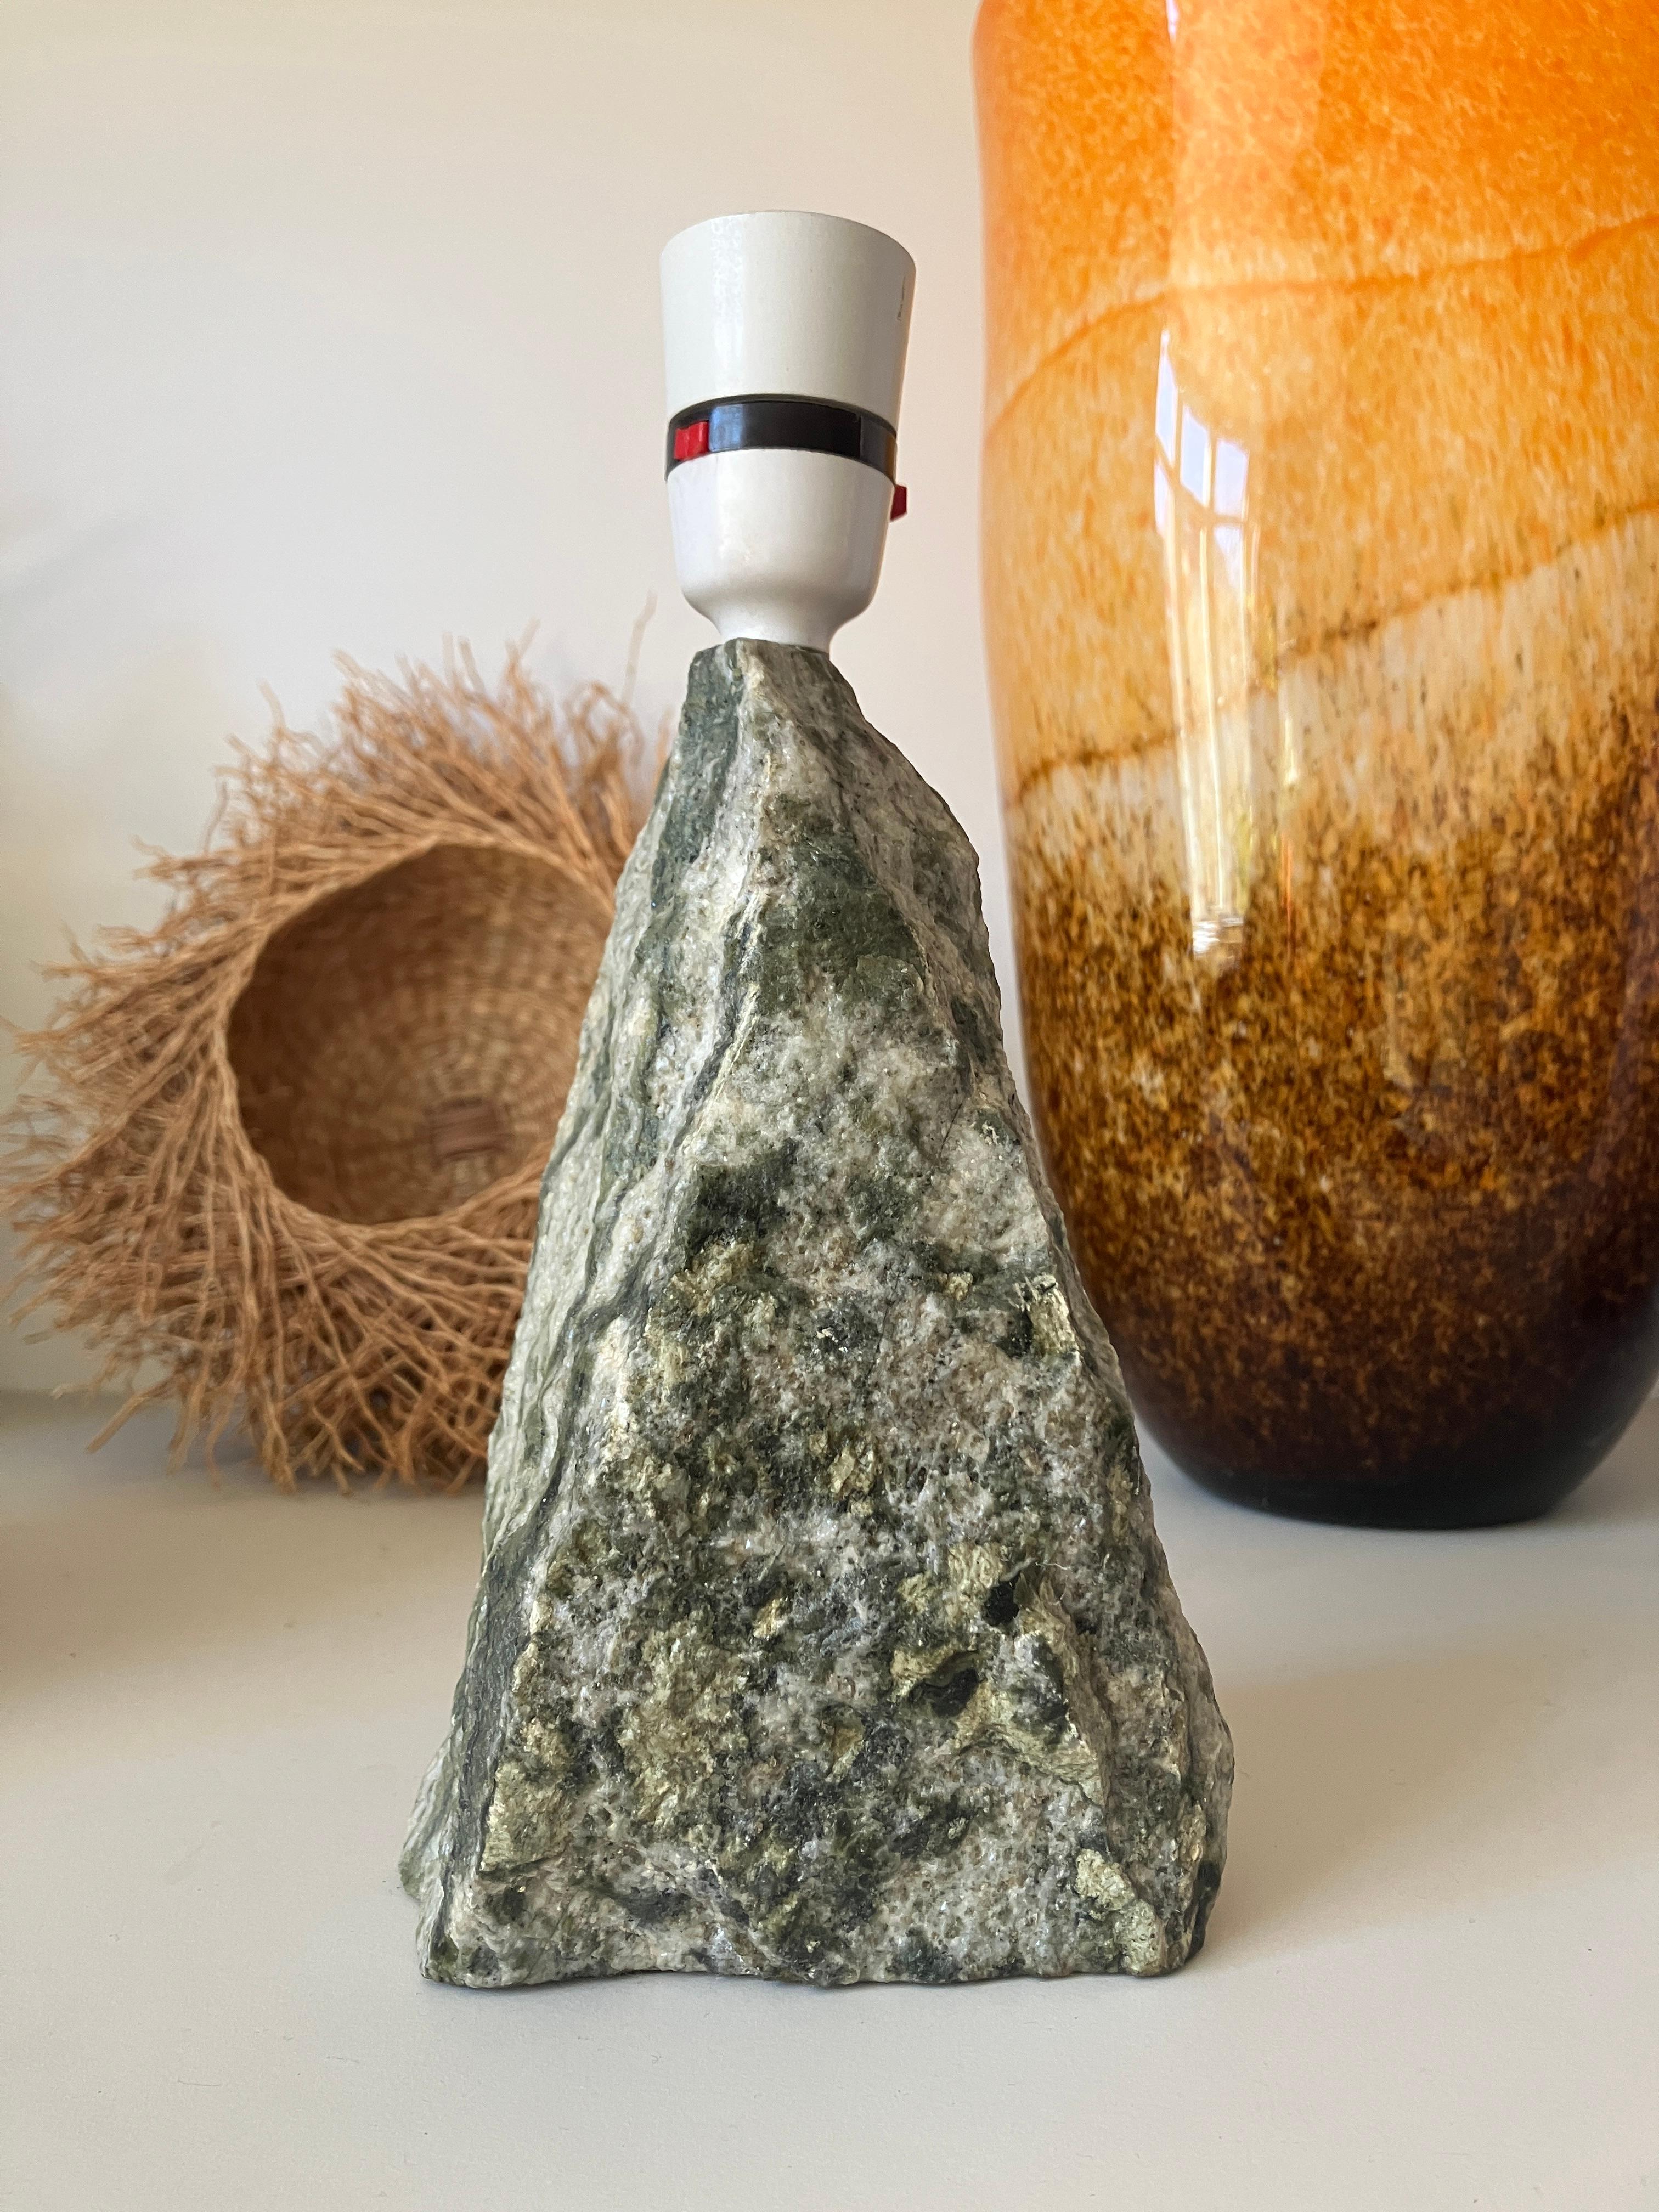 Un superbe pied de lampe en pierre marbrière d'Écosse. Le marbre a des teintes vertes et grises, spécifiques à Dunkeld en Écosse.  Jolie forme d'obélisque ciselée et superbe finition en pierre brute. 

Cette lampe écossaise en marbre a une base en